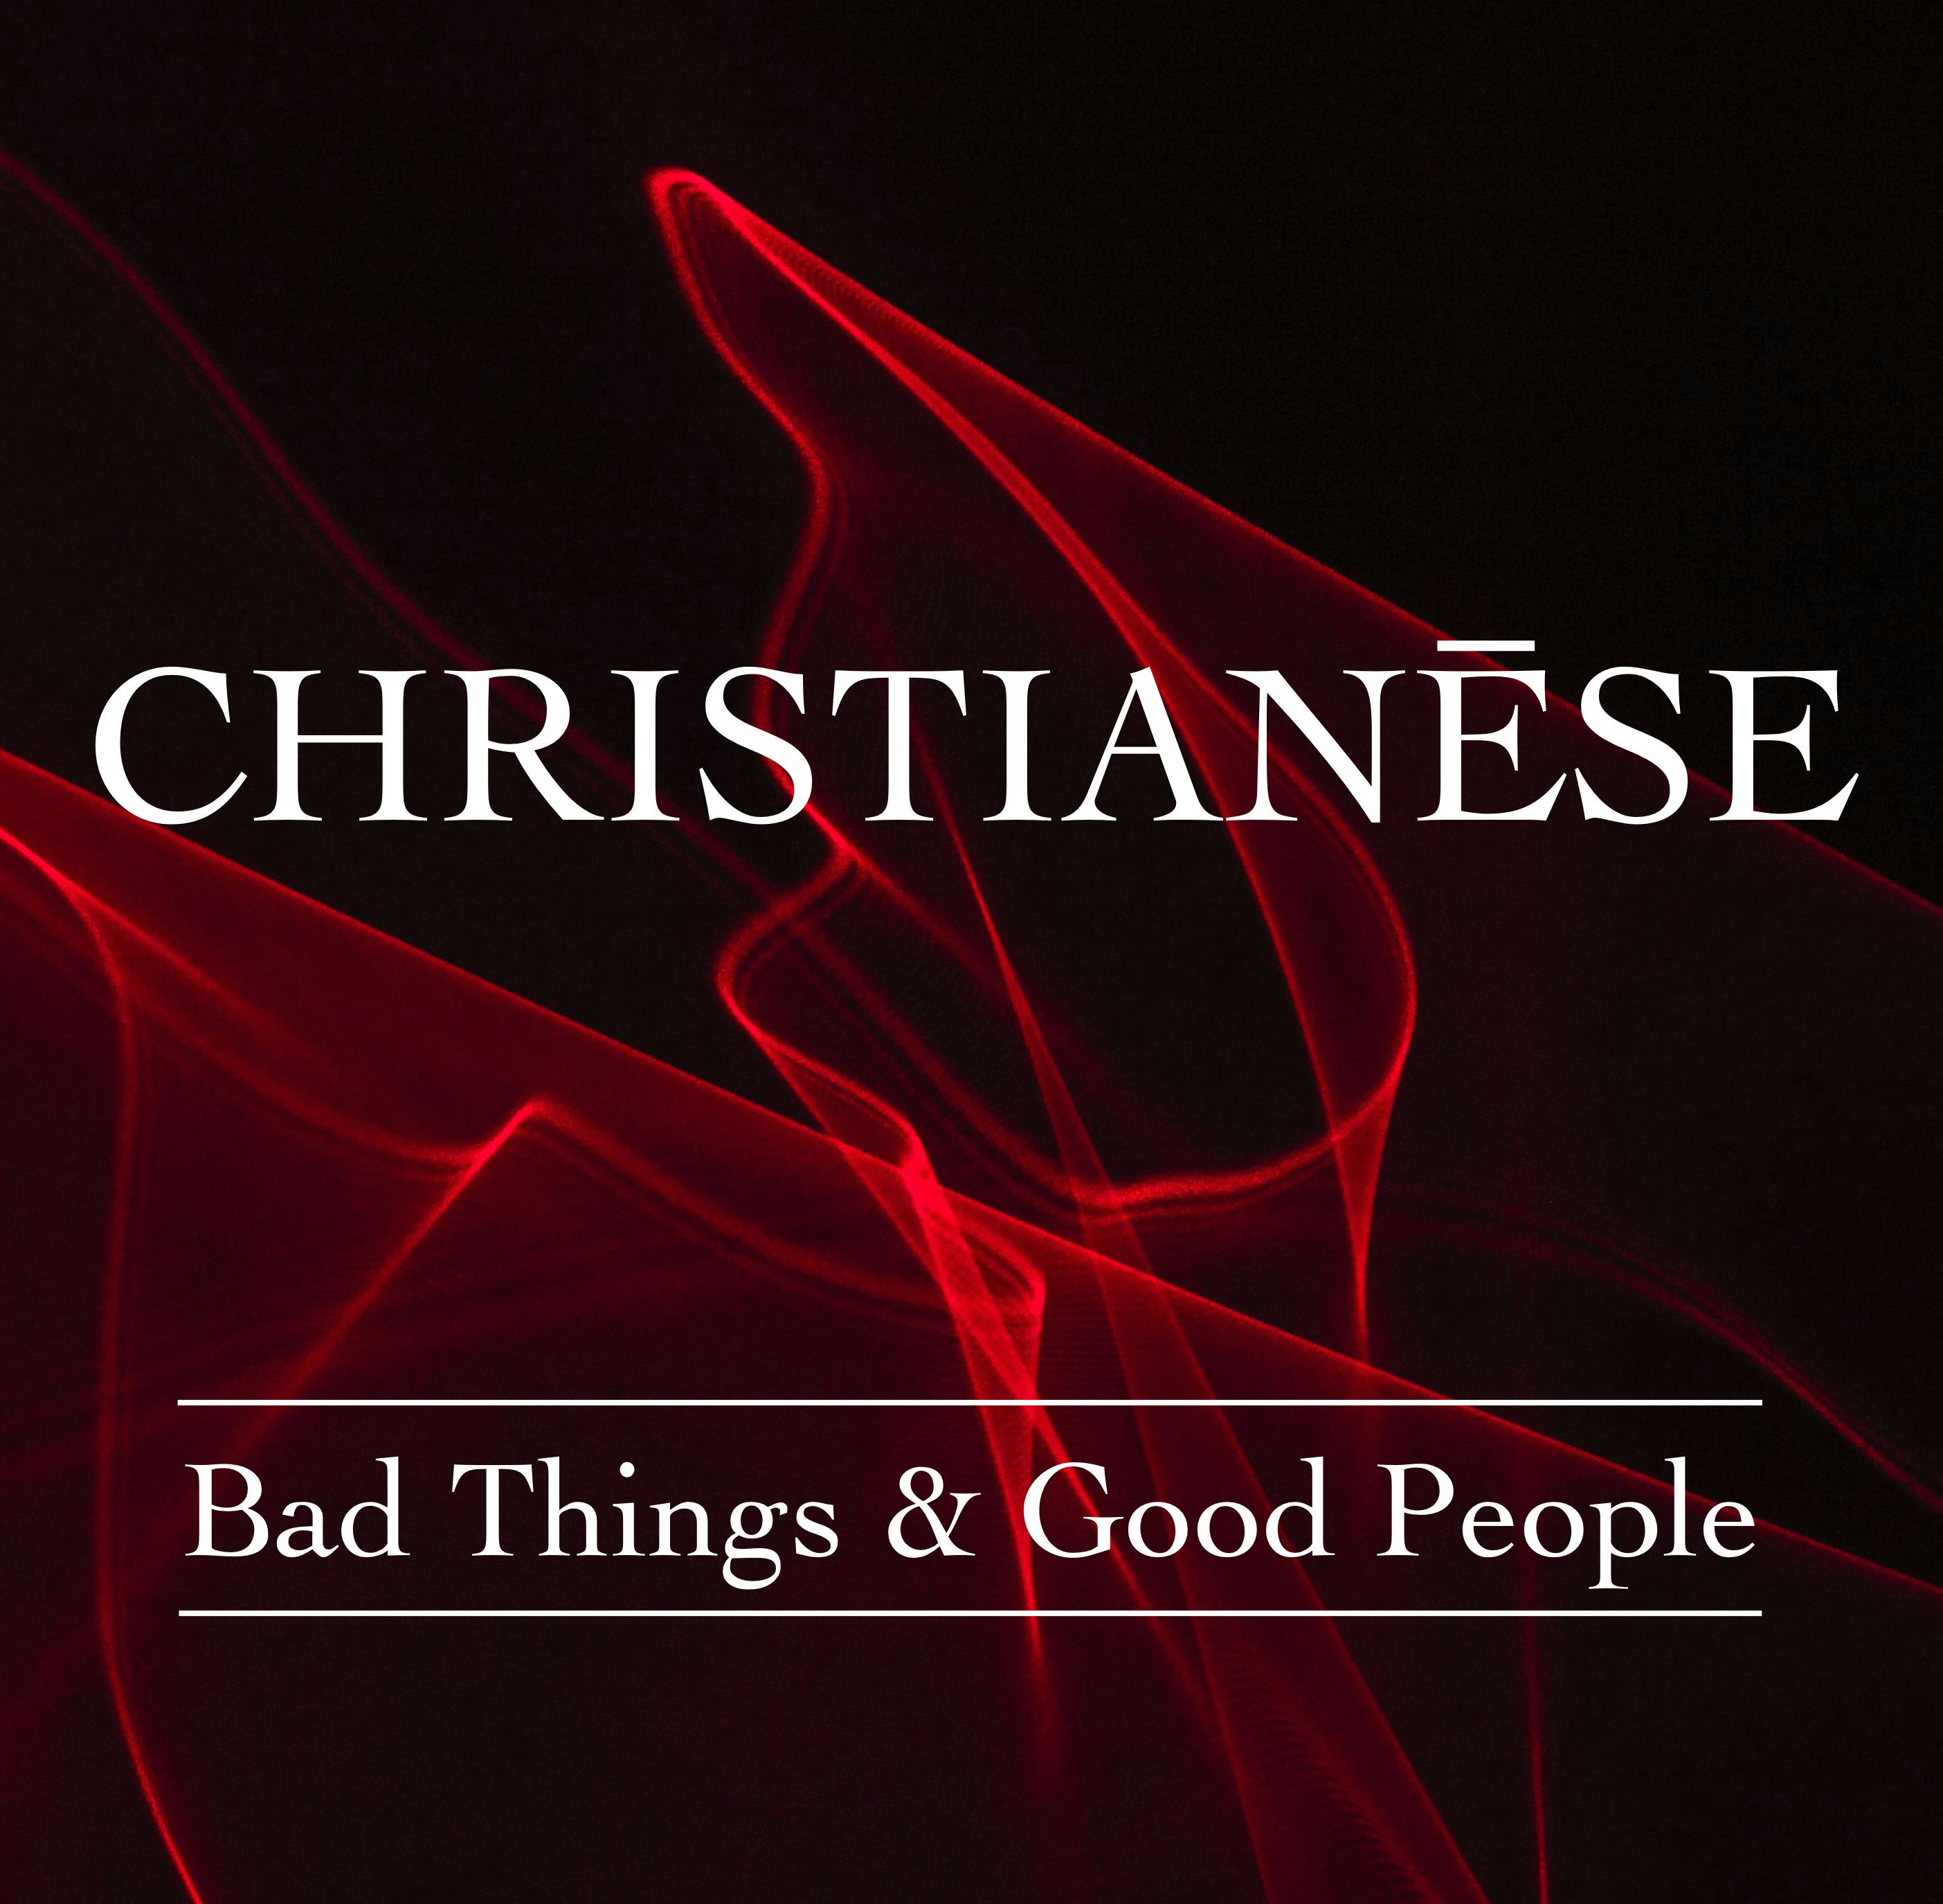 Bad Things & Good People